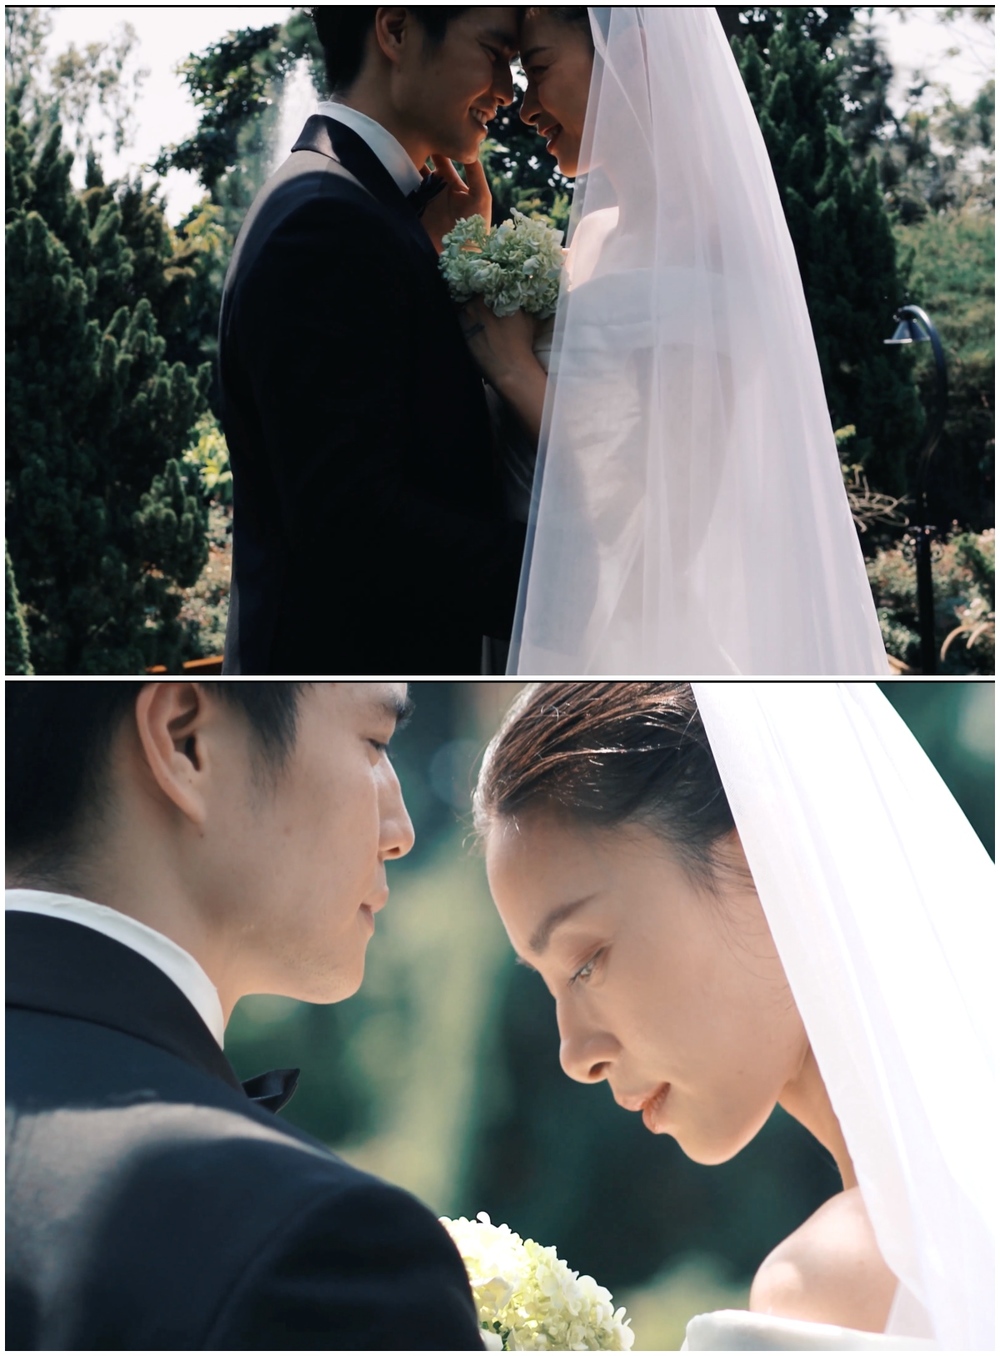  Mọi khoảnh khắc trong bộ ảnh cưới của Ngô Thanh Vân - Huy Trần đều rất ngọt ngào. (Ảnh: Chụp màn hình từ Facebook Ngo Thanh Van) - Tin sao Viet - Tin tuc sao Viet - Scandal sao Viet - Tin tuc cua Sao - Tin cua Sao